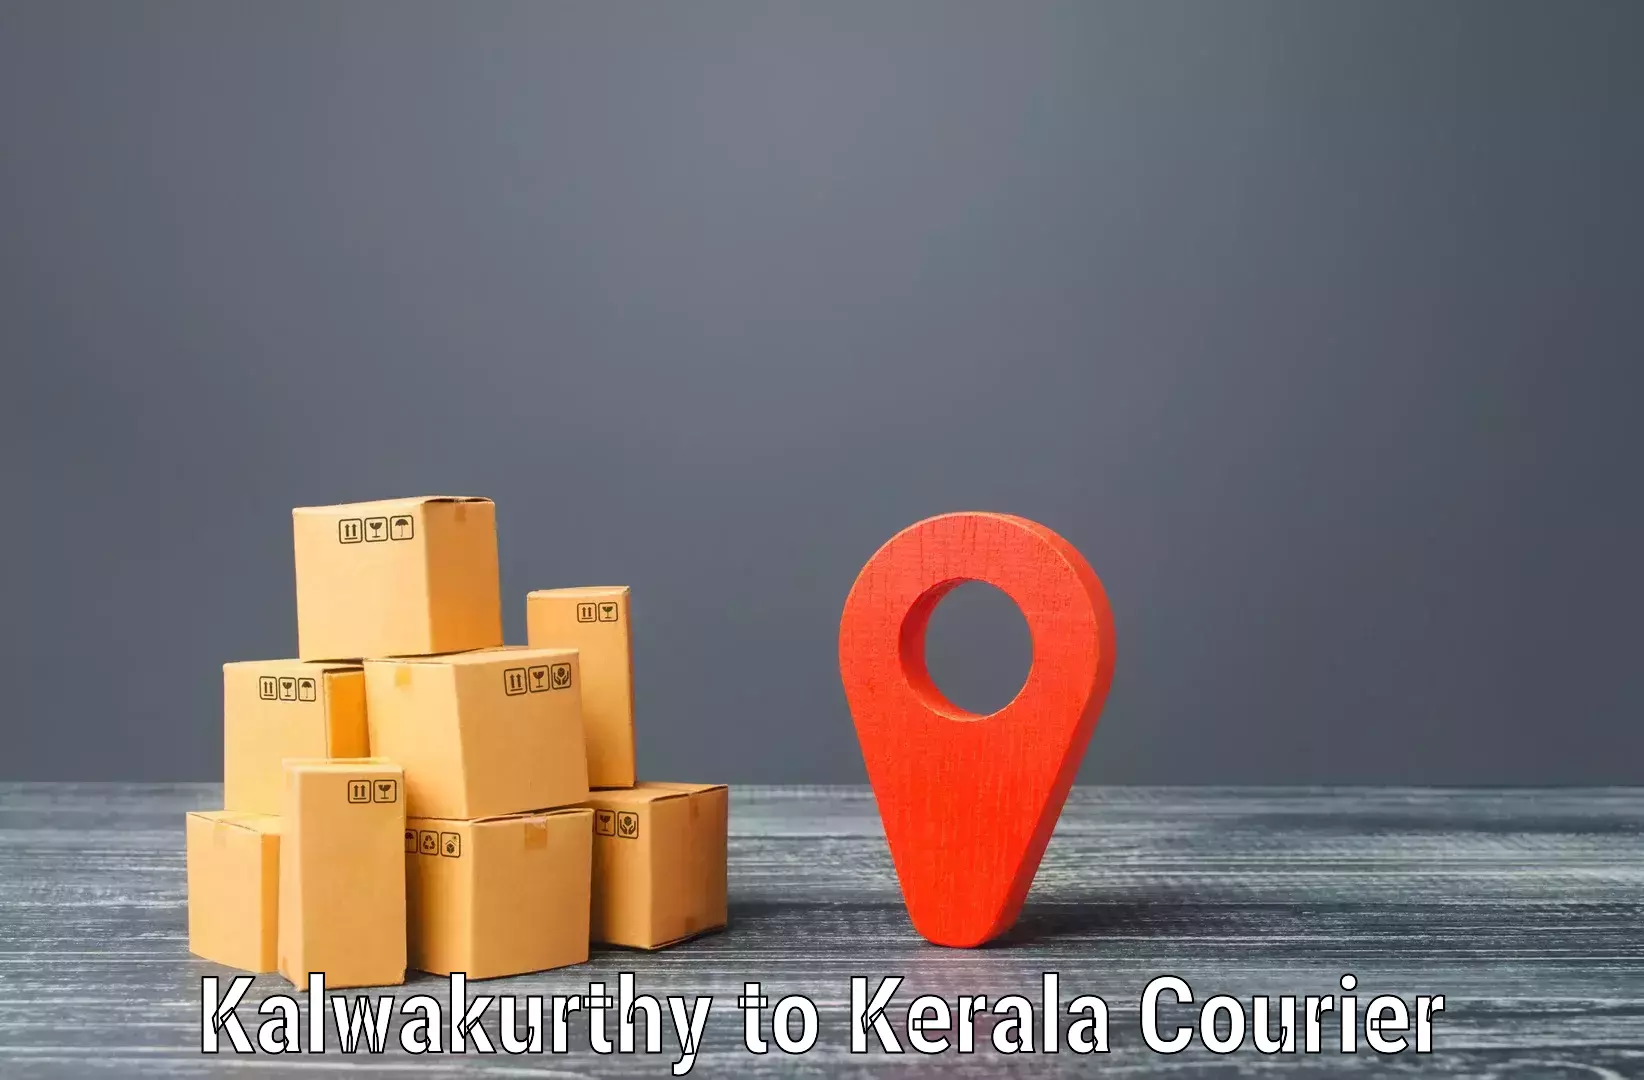 Professional courier handling Kalwakurthy to Idukki